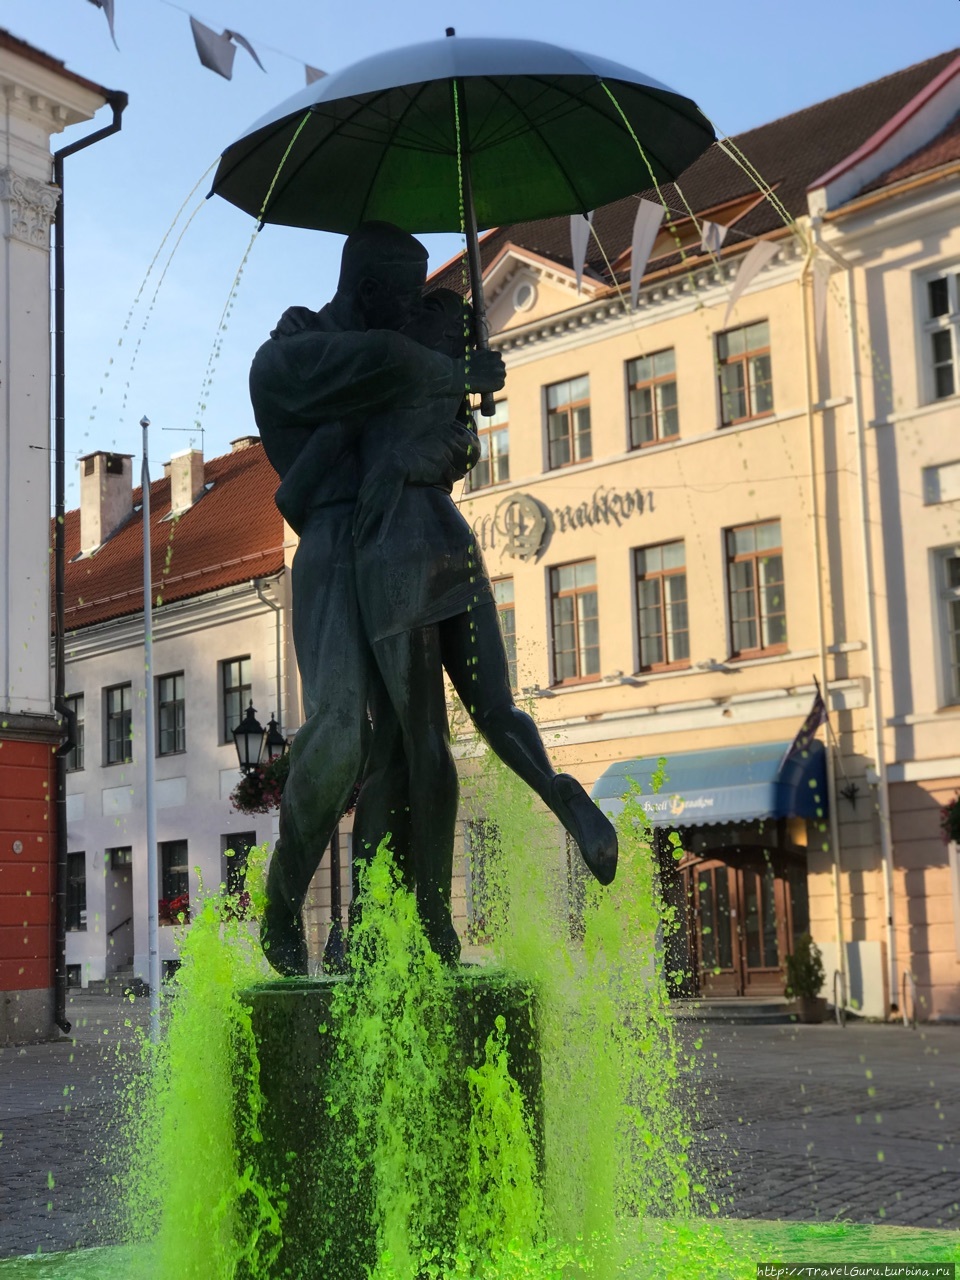 Фонтан перед ратушей построили сразу после Великой Отечественной войны, но лишь в 1998 году добавили скульптурную композицию целующихся студентов. Вода подаётся в конструкцию зонта, бьёт струями из-под фигур студентов, а подсветка создаёт эффект водопада. Тарту, Эстония